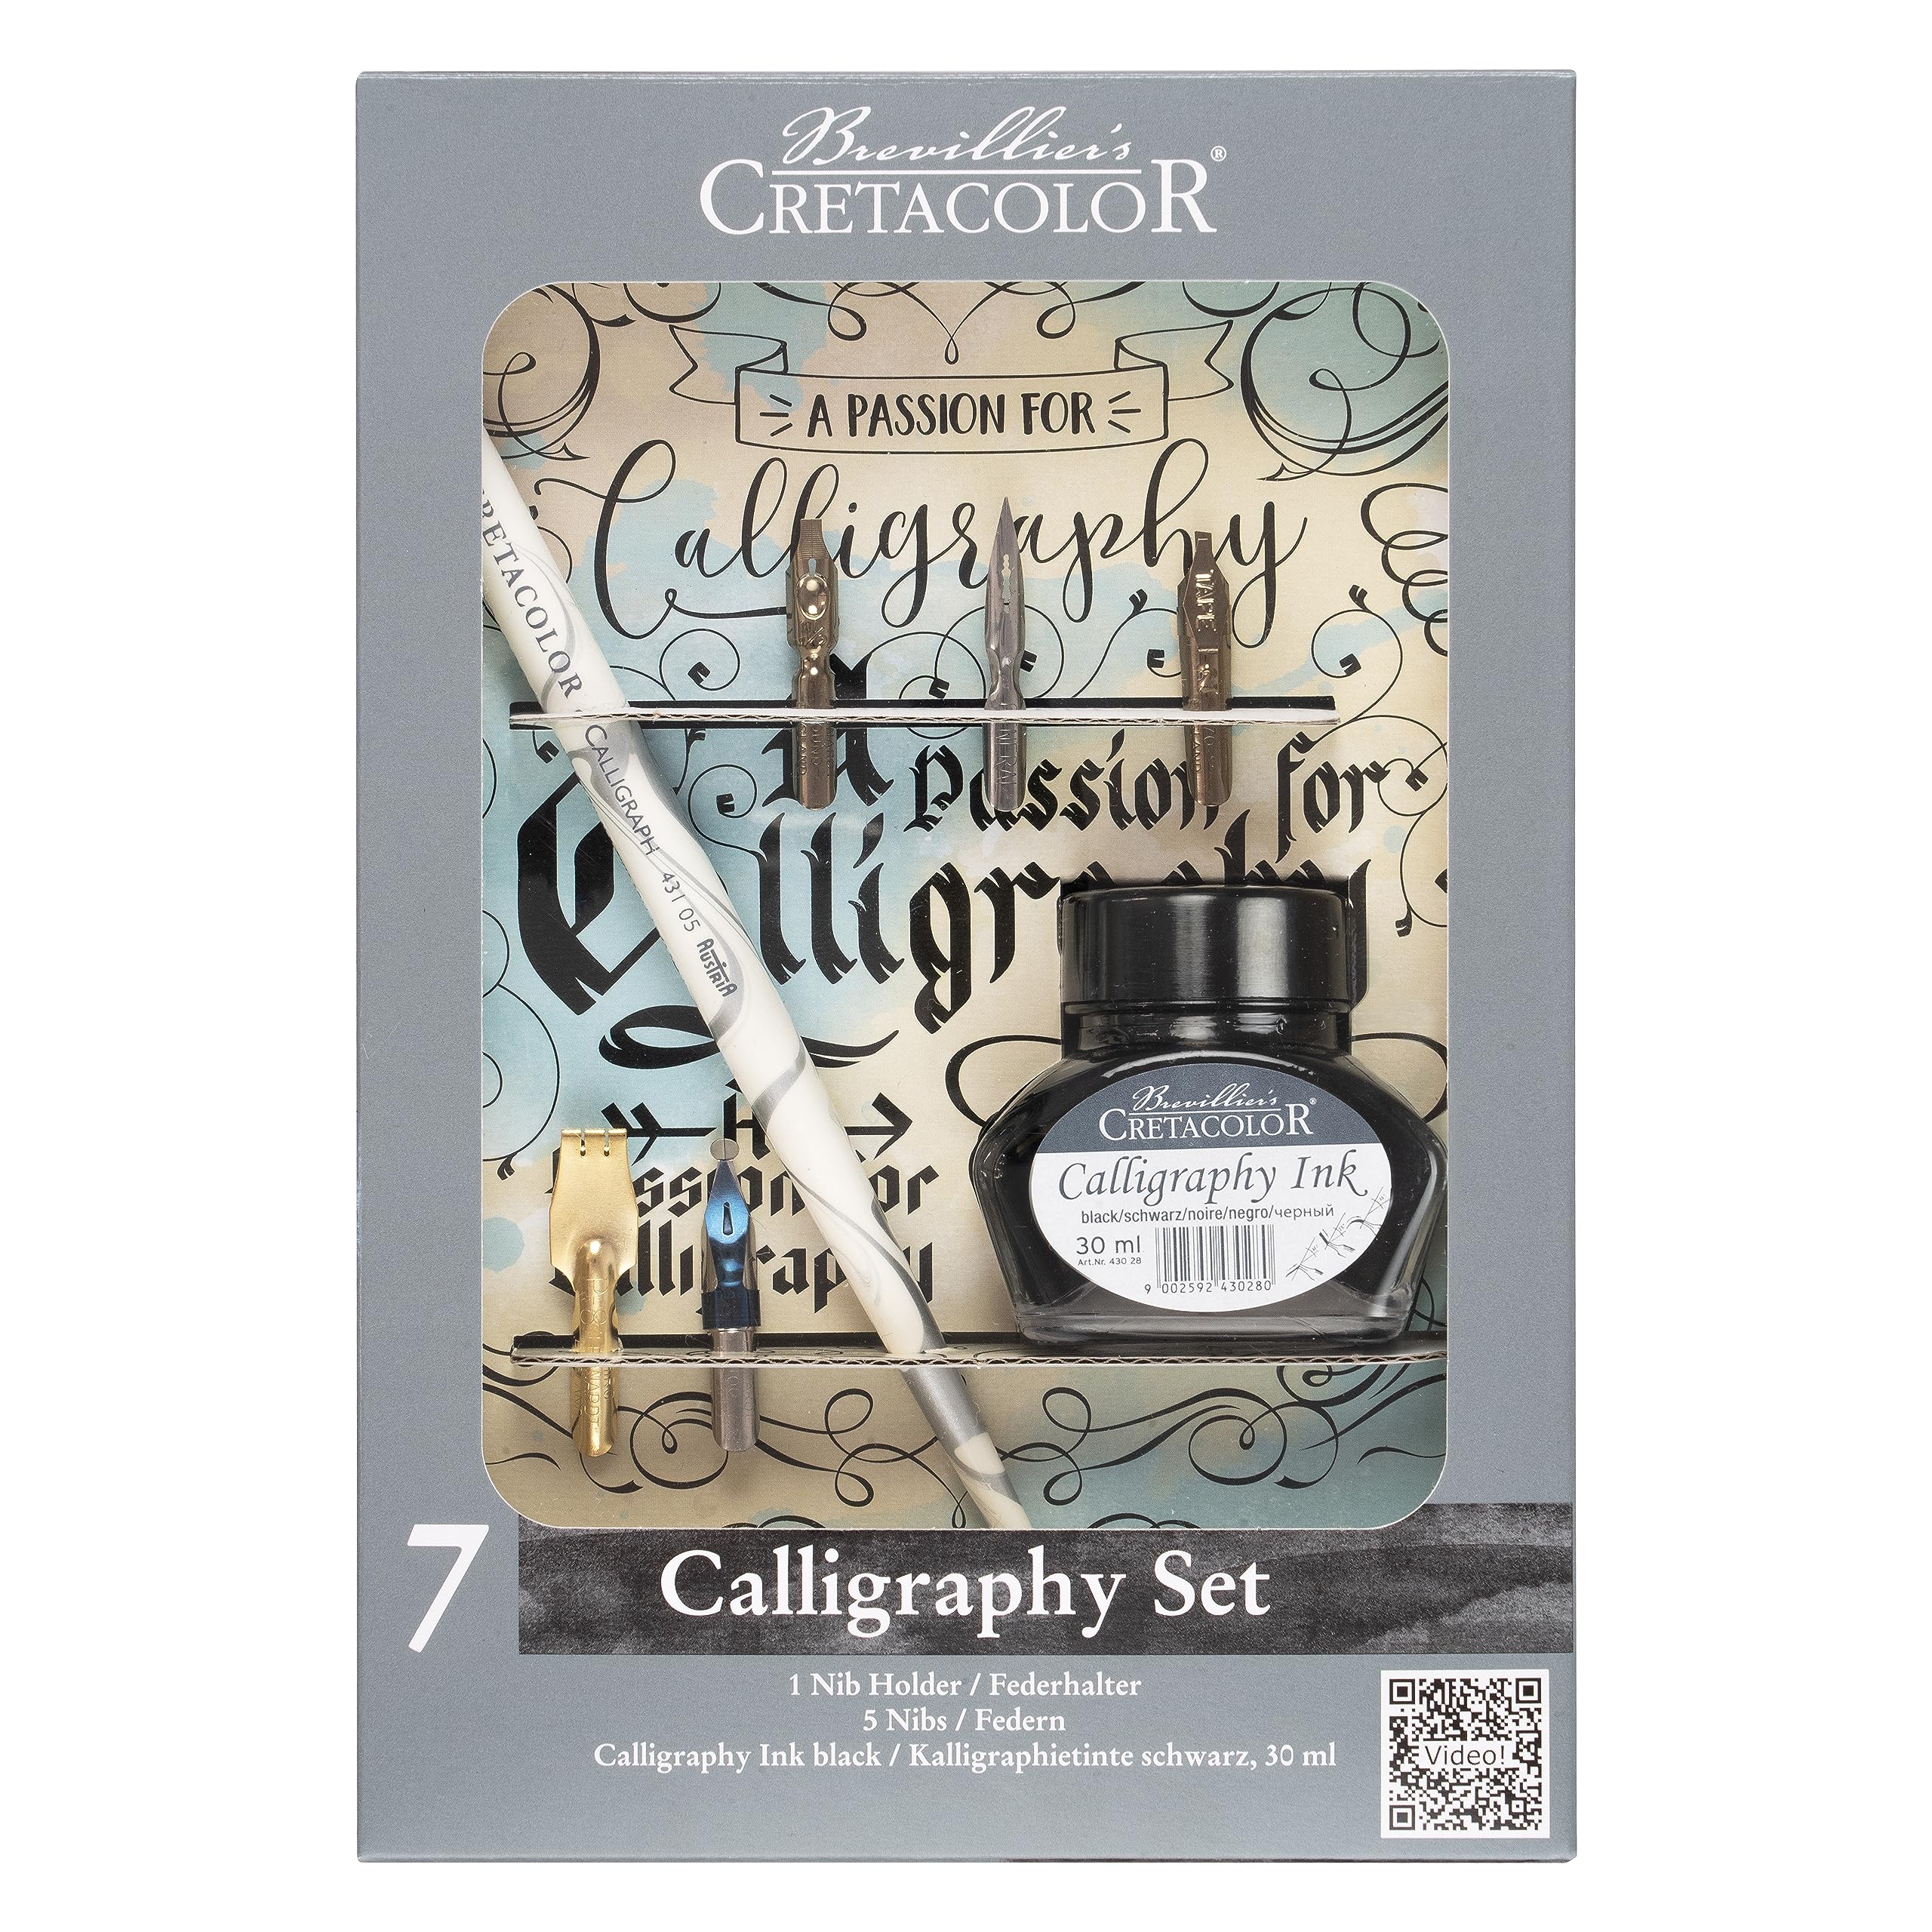 Cretacolor Kalligraphie-Set, 7-teilig, 5 verschiedene Federn, inkl. Tinte, für Kalligraphie und Schönschreiben, kompaktes Set für Künstler